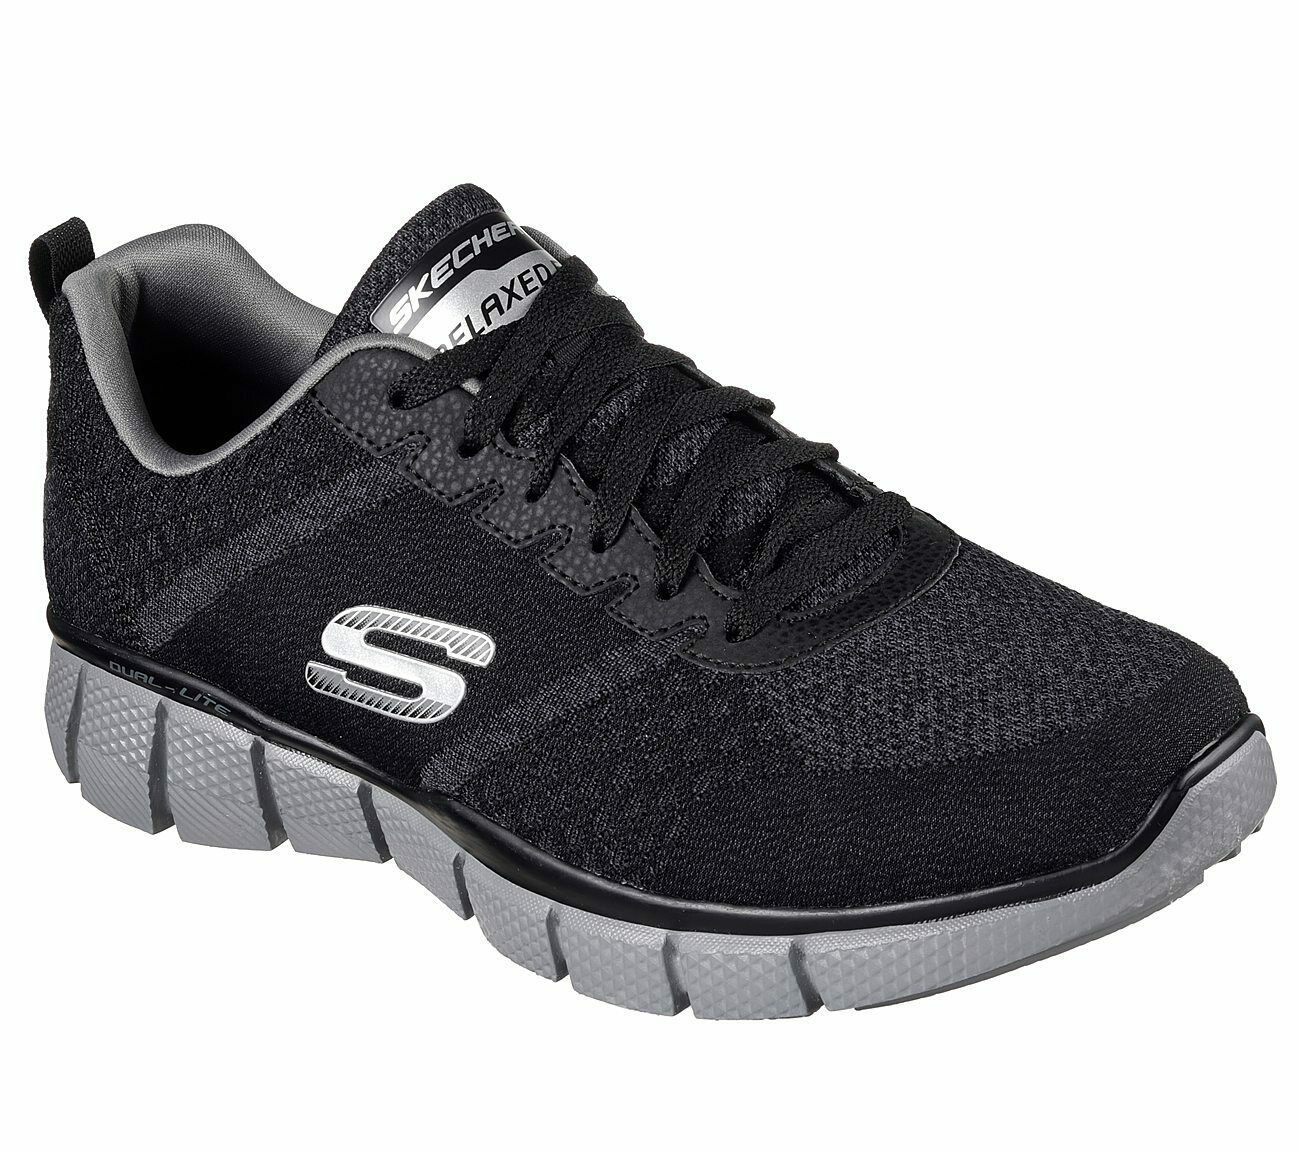 Skechers Black Extra Wide Fit Shoes Men's Memory Foam Sporty Trail ...